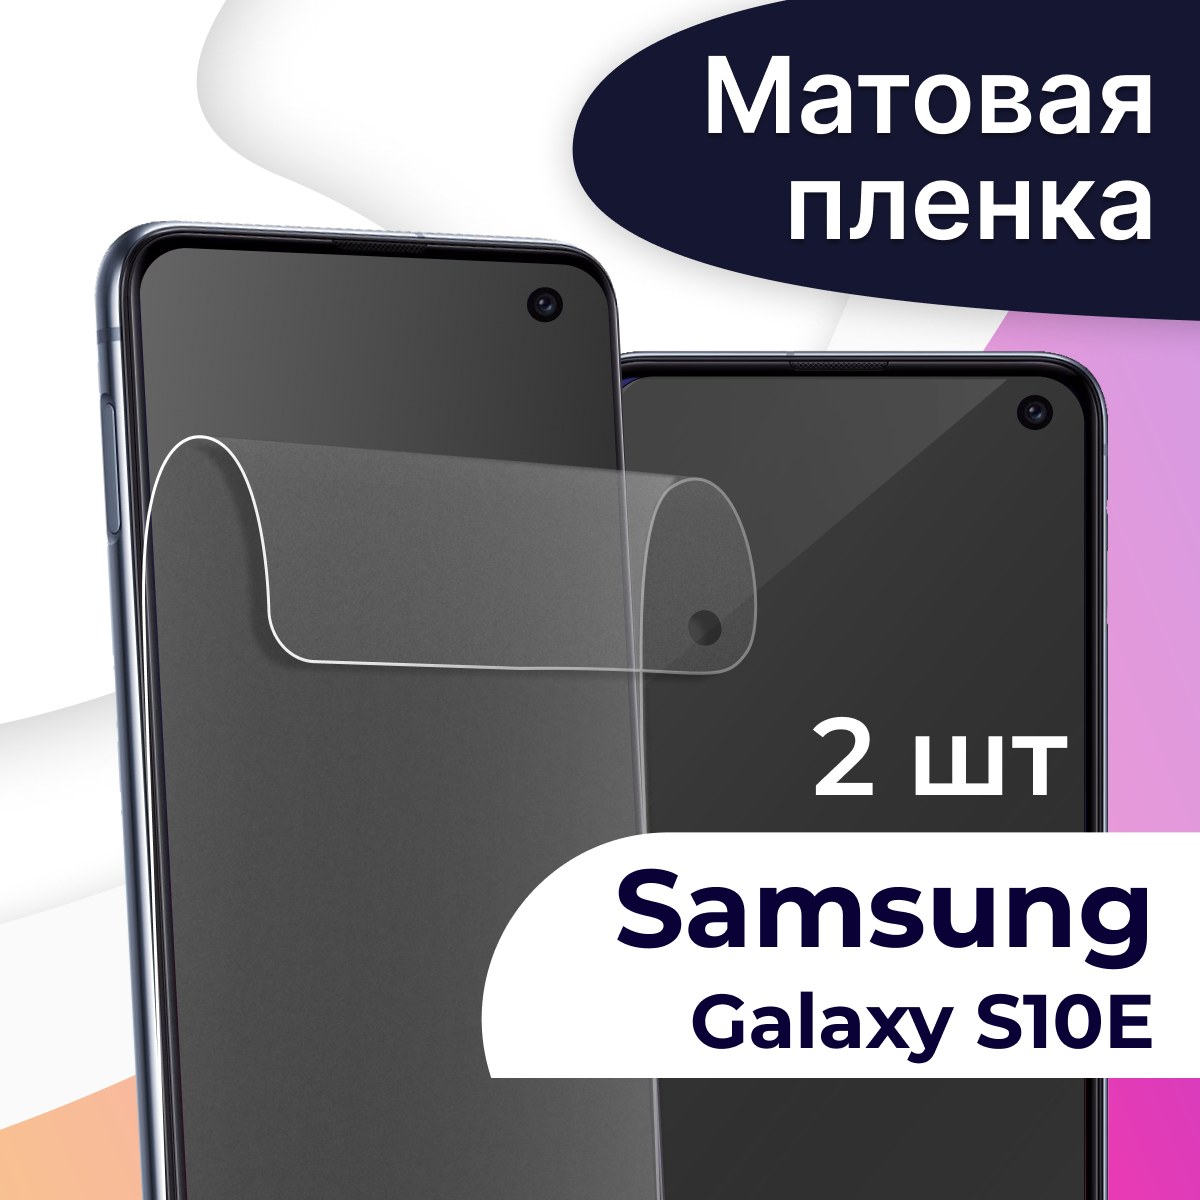 Комплект 2 шт. Матовая пленка на телефон Samsung Galaxy S10E / Гидрогелевая противоударная пленка для смартфона Самсунг Галакси С10Е / Защитная пленка